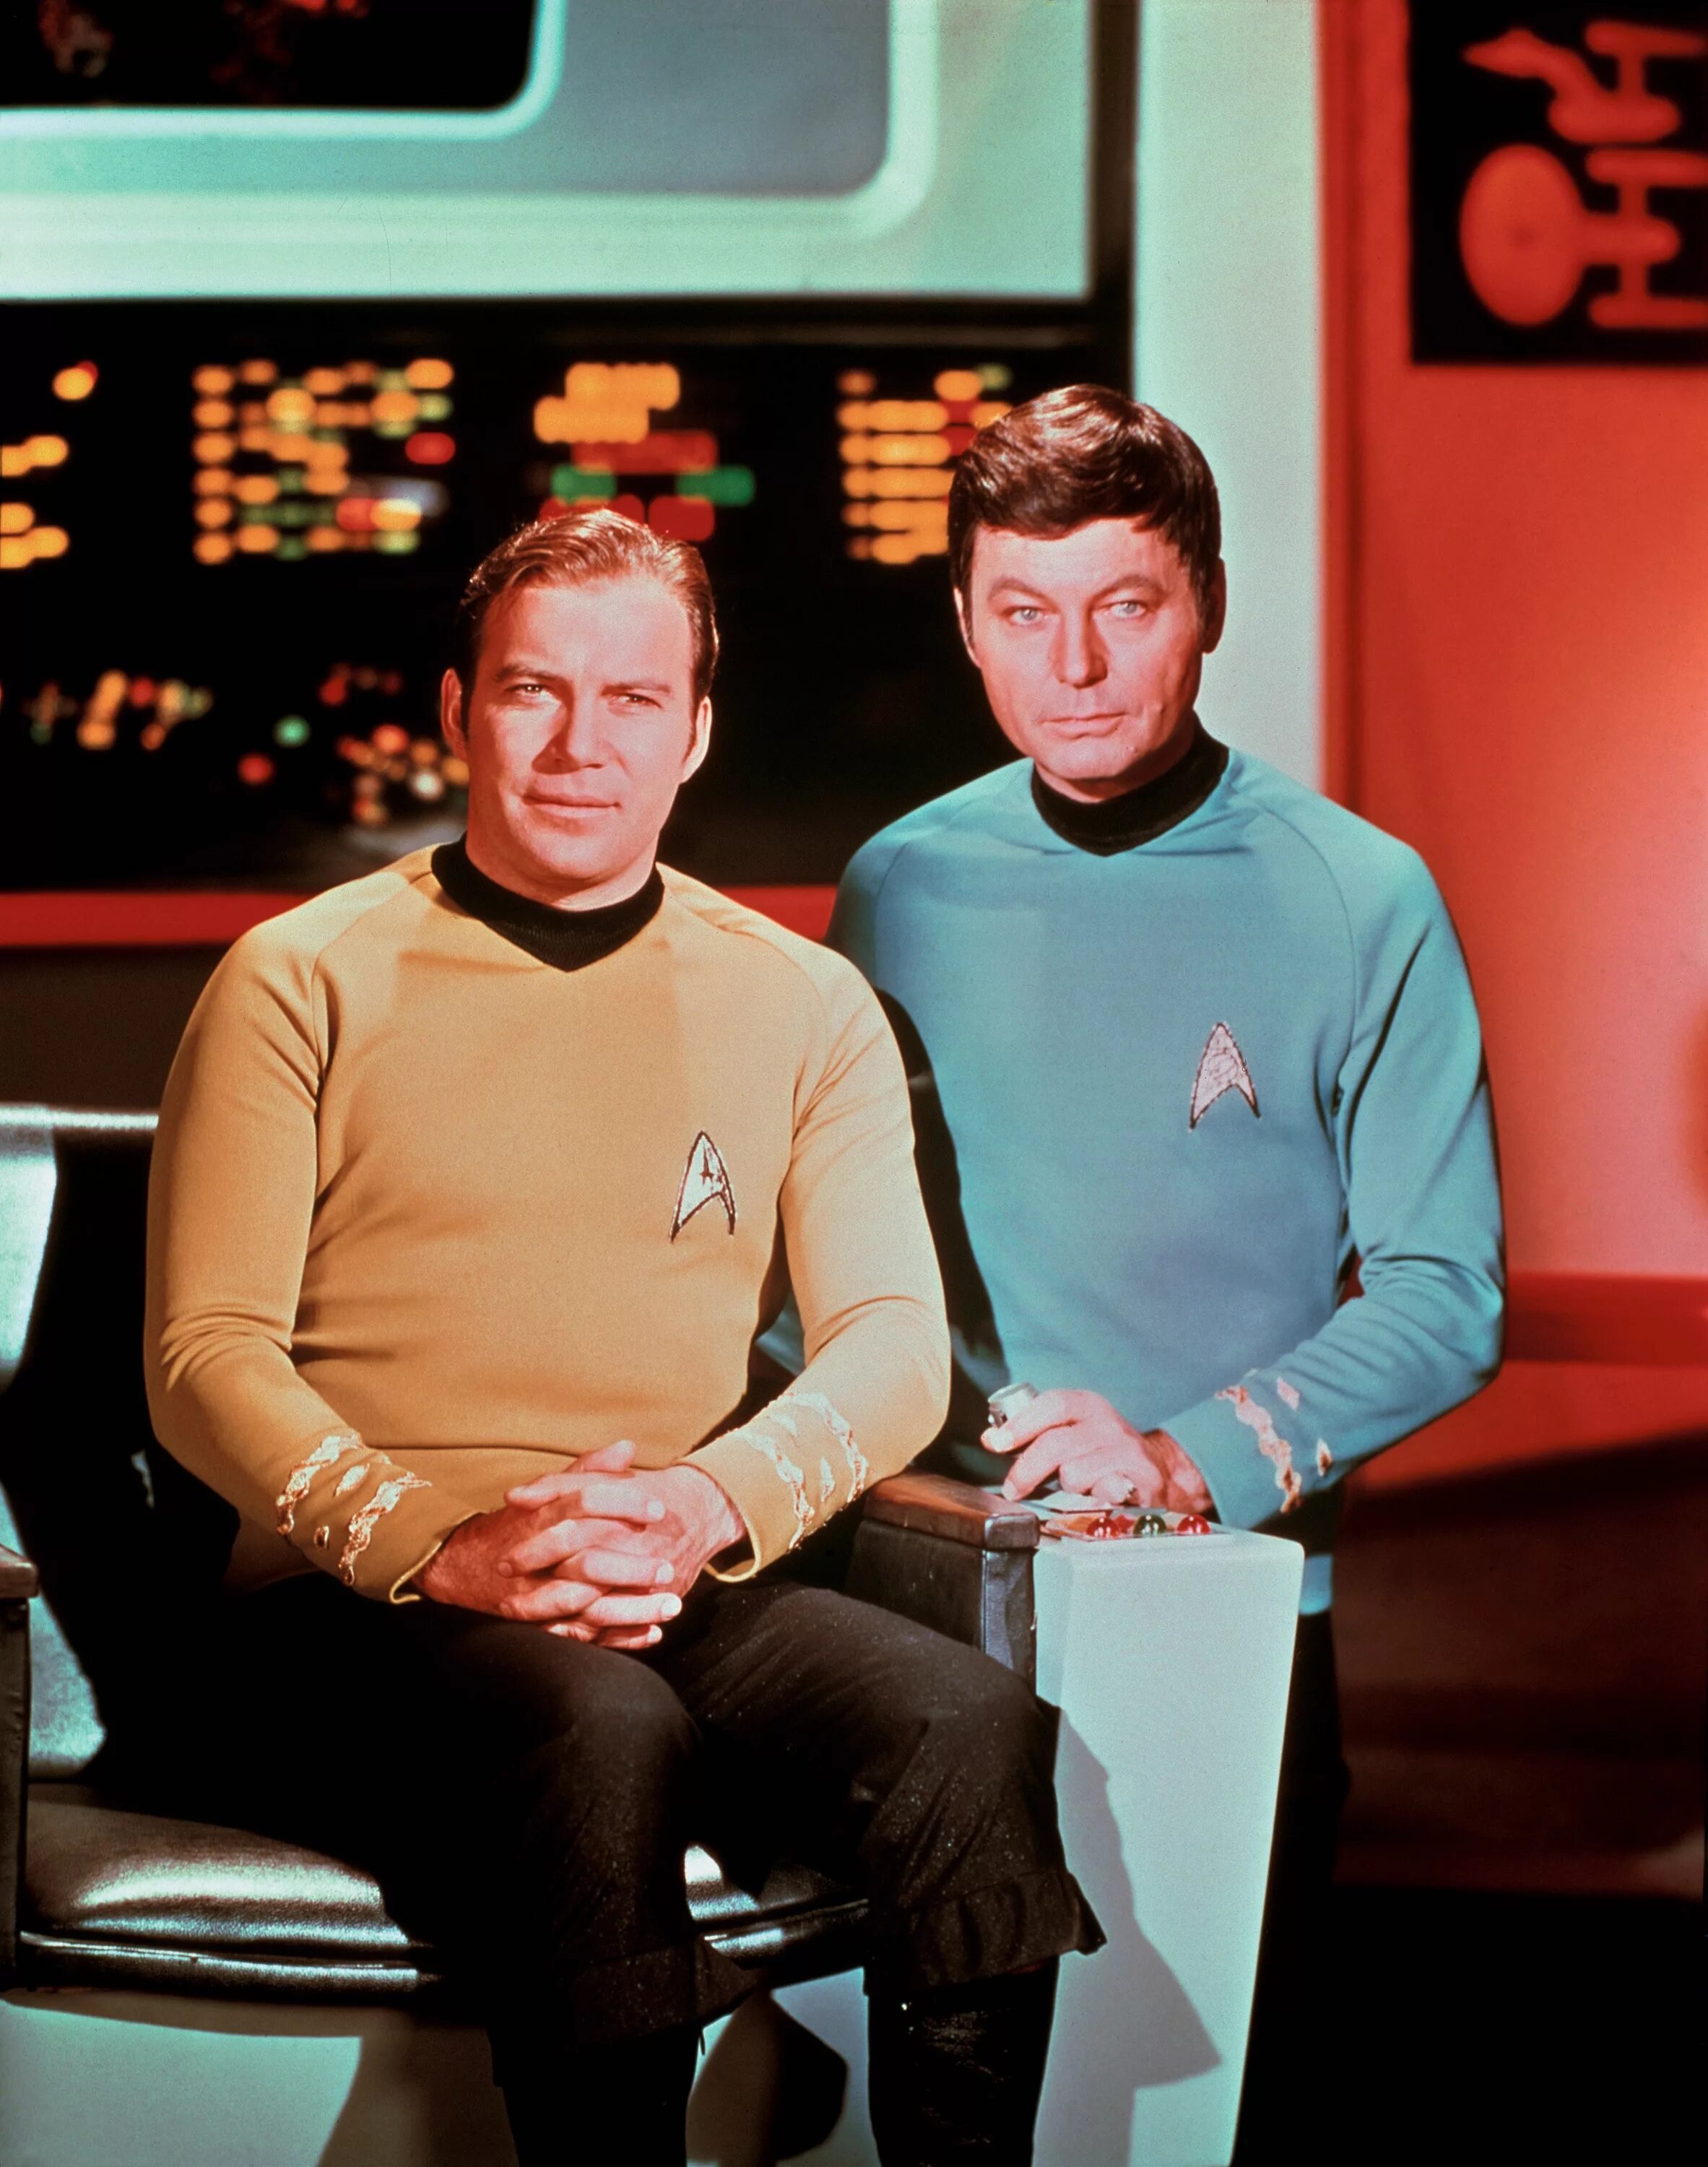 Star Trek Original Series. Star Trek TOS. Джордж Кирк Стартрек. Капитан Кирк и Маккой. Star trek original